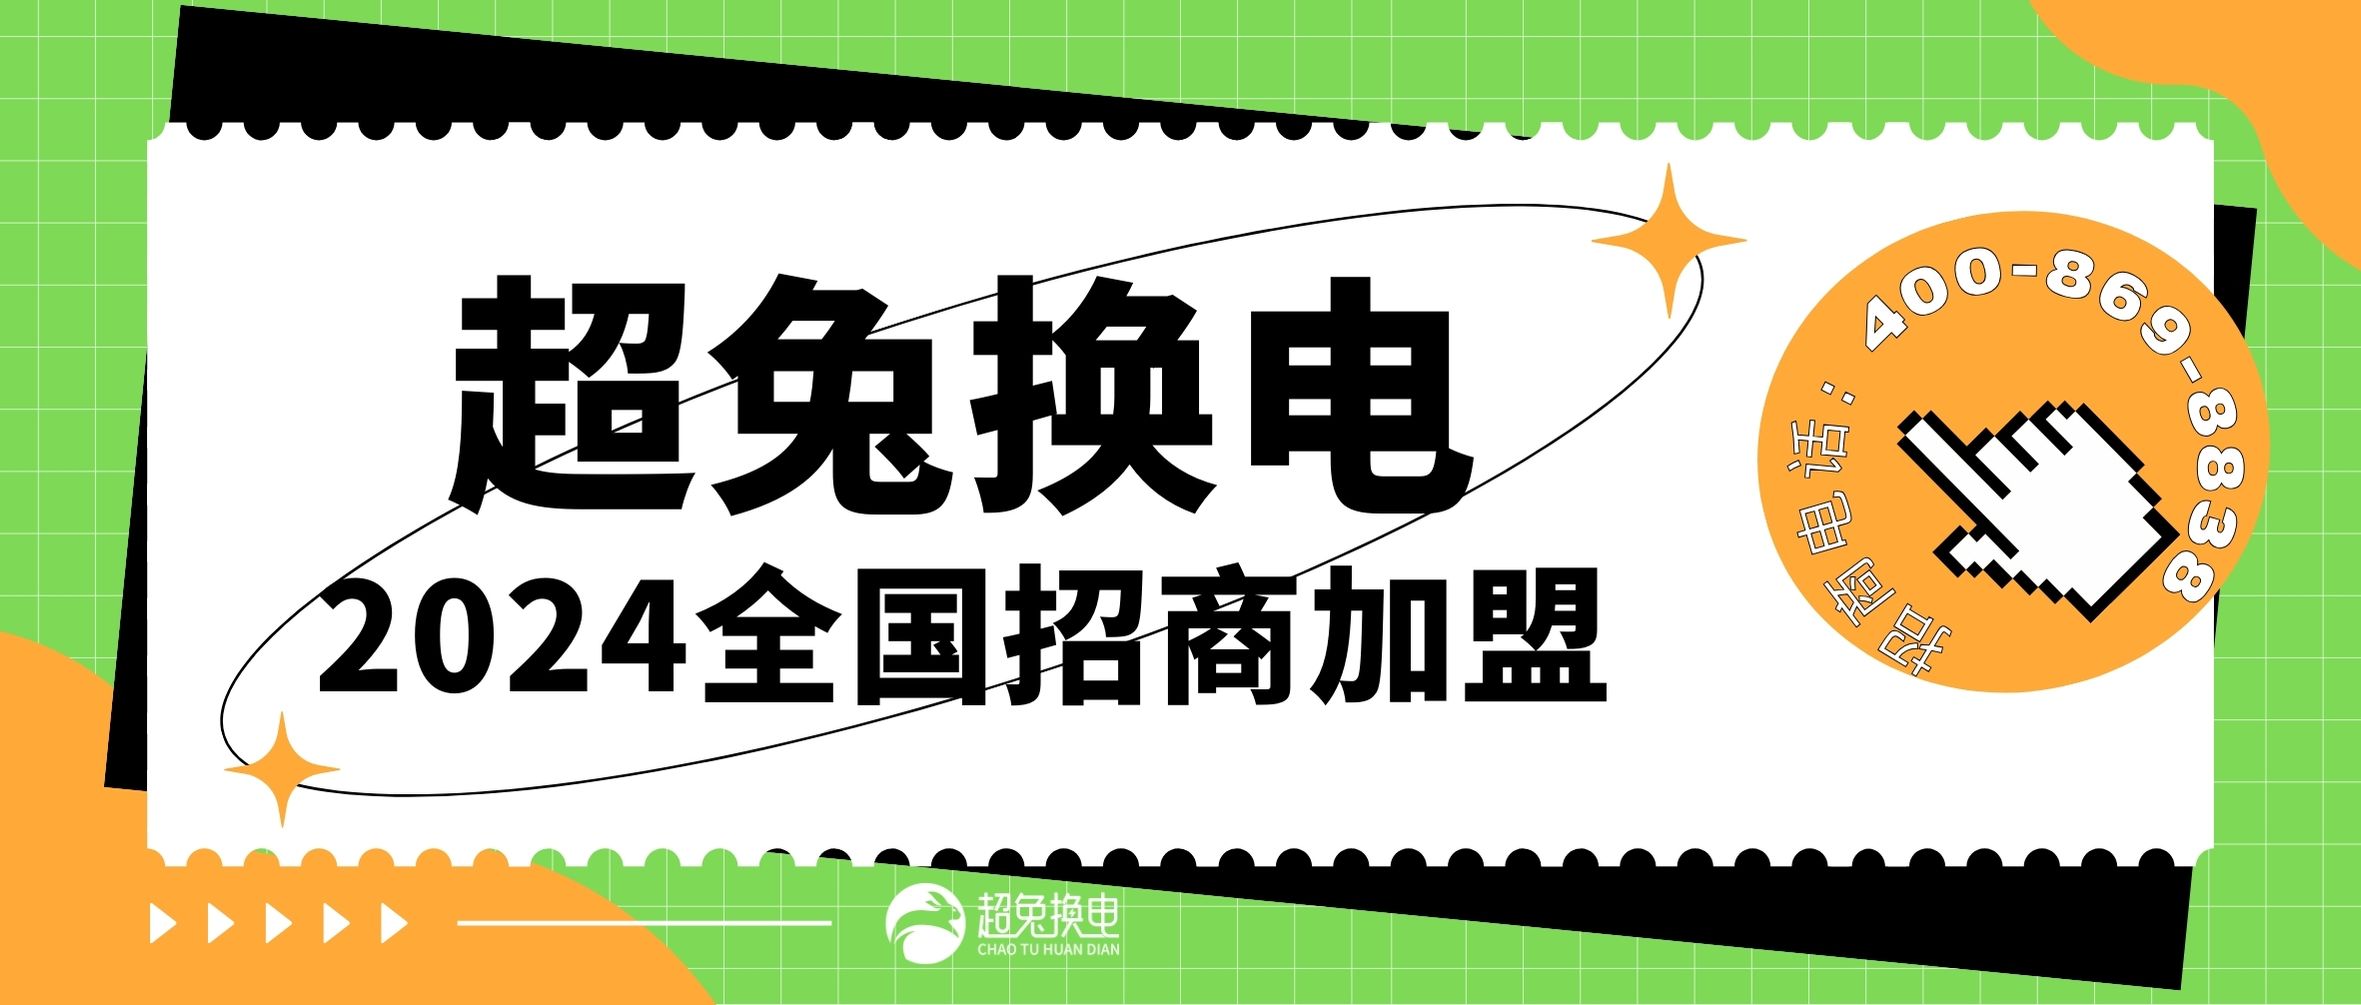 绿橙黑白色大标题健身招聘微信公众号封面 (1).jpg